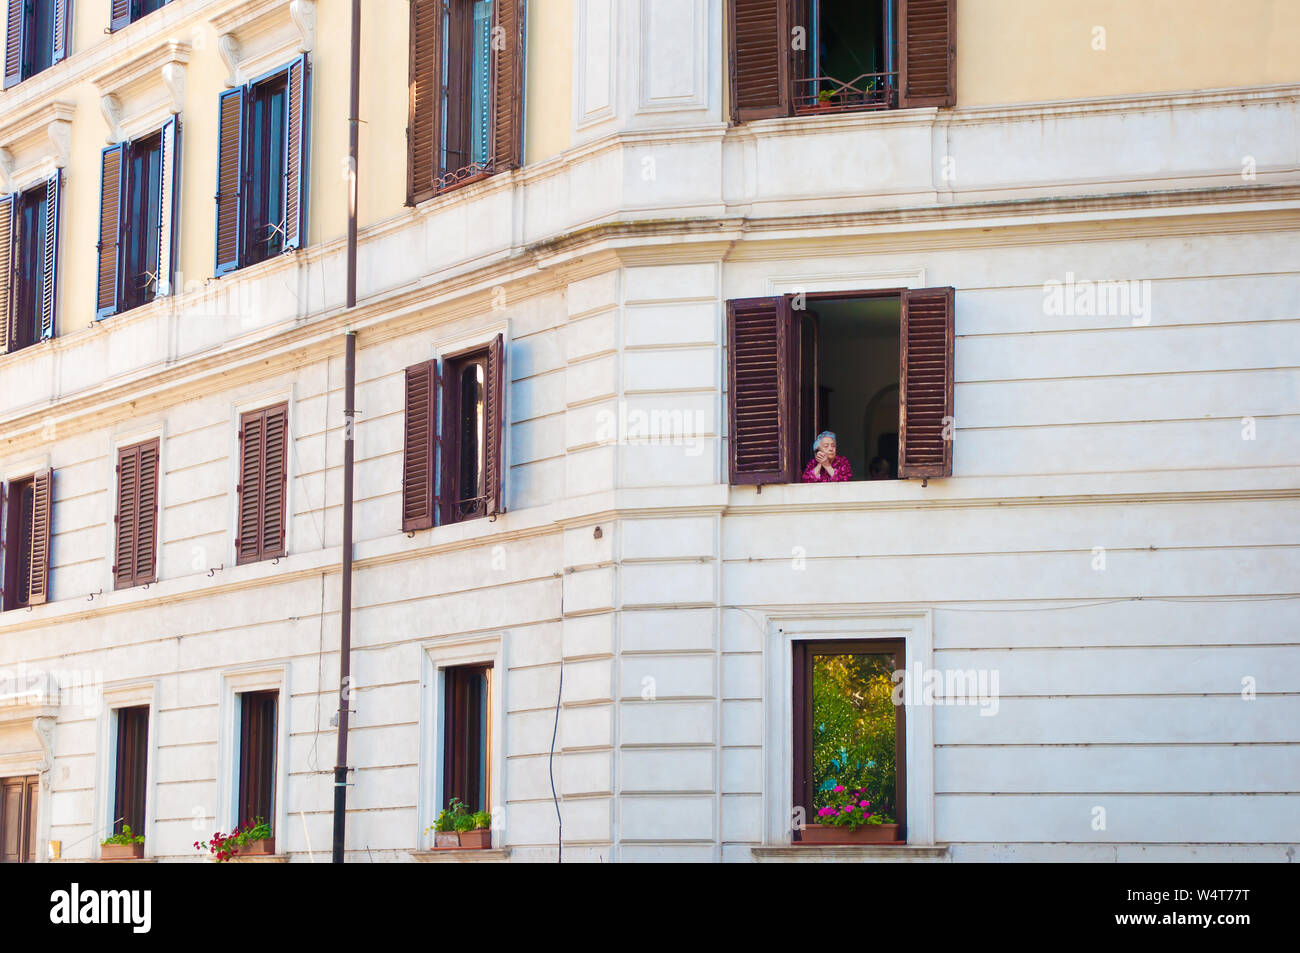 Rome, Italie - 28 octobre 2017 : Une vieille dame à la recherche d'une fenêtre avec des volets marron. Conception de la vie, les souvenirs, la joie. - Image Banque D'Images